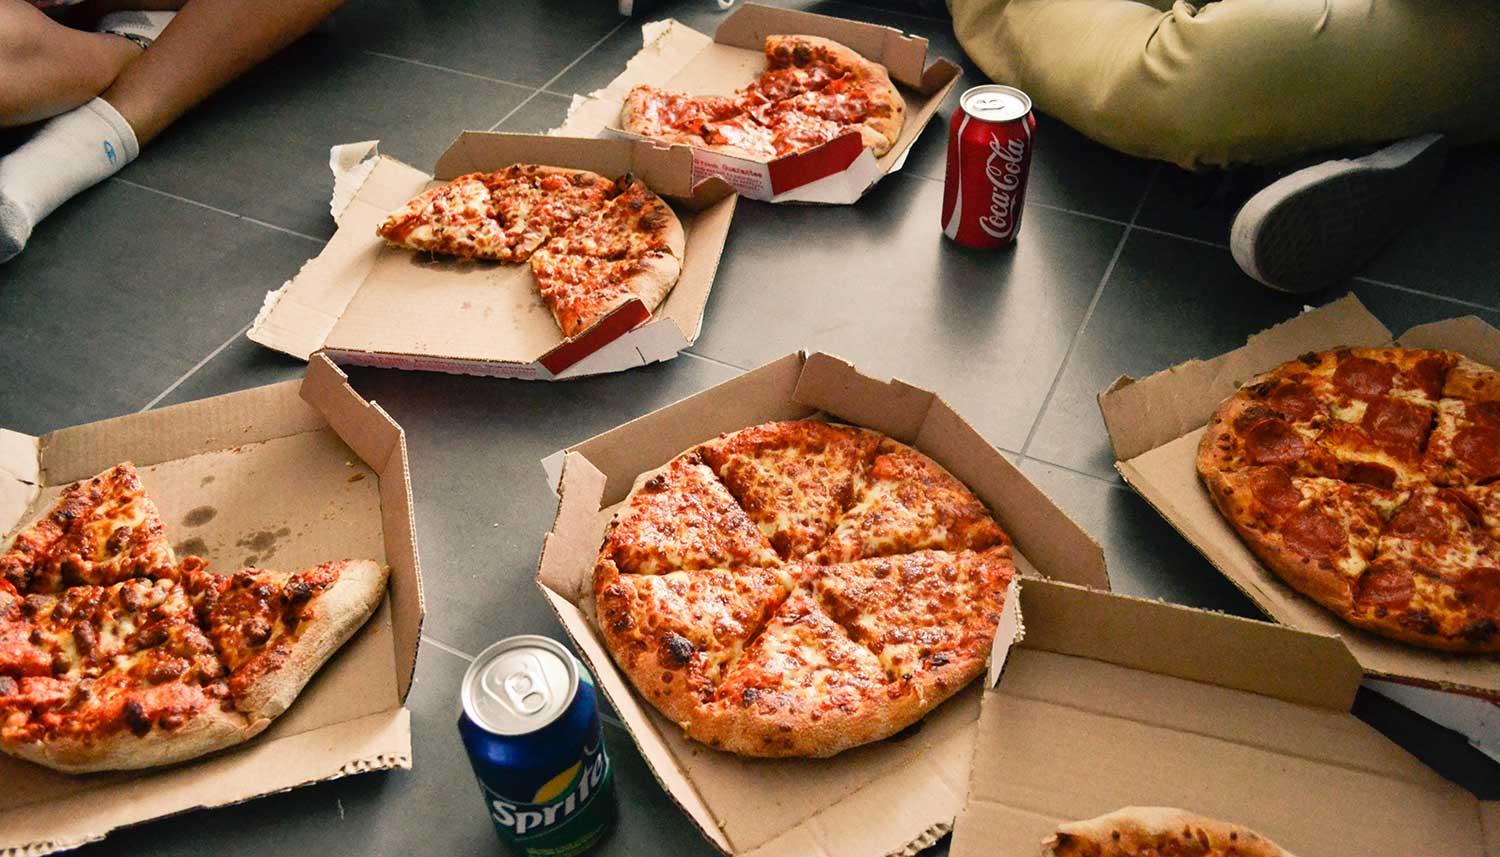 Overtuiging Huiswerk Nationale volkstelling Gratis pizza via Thuisbezorgd regel je zo - JFK